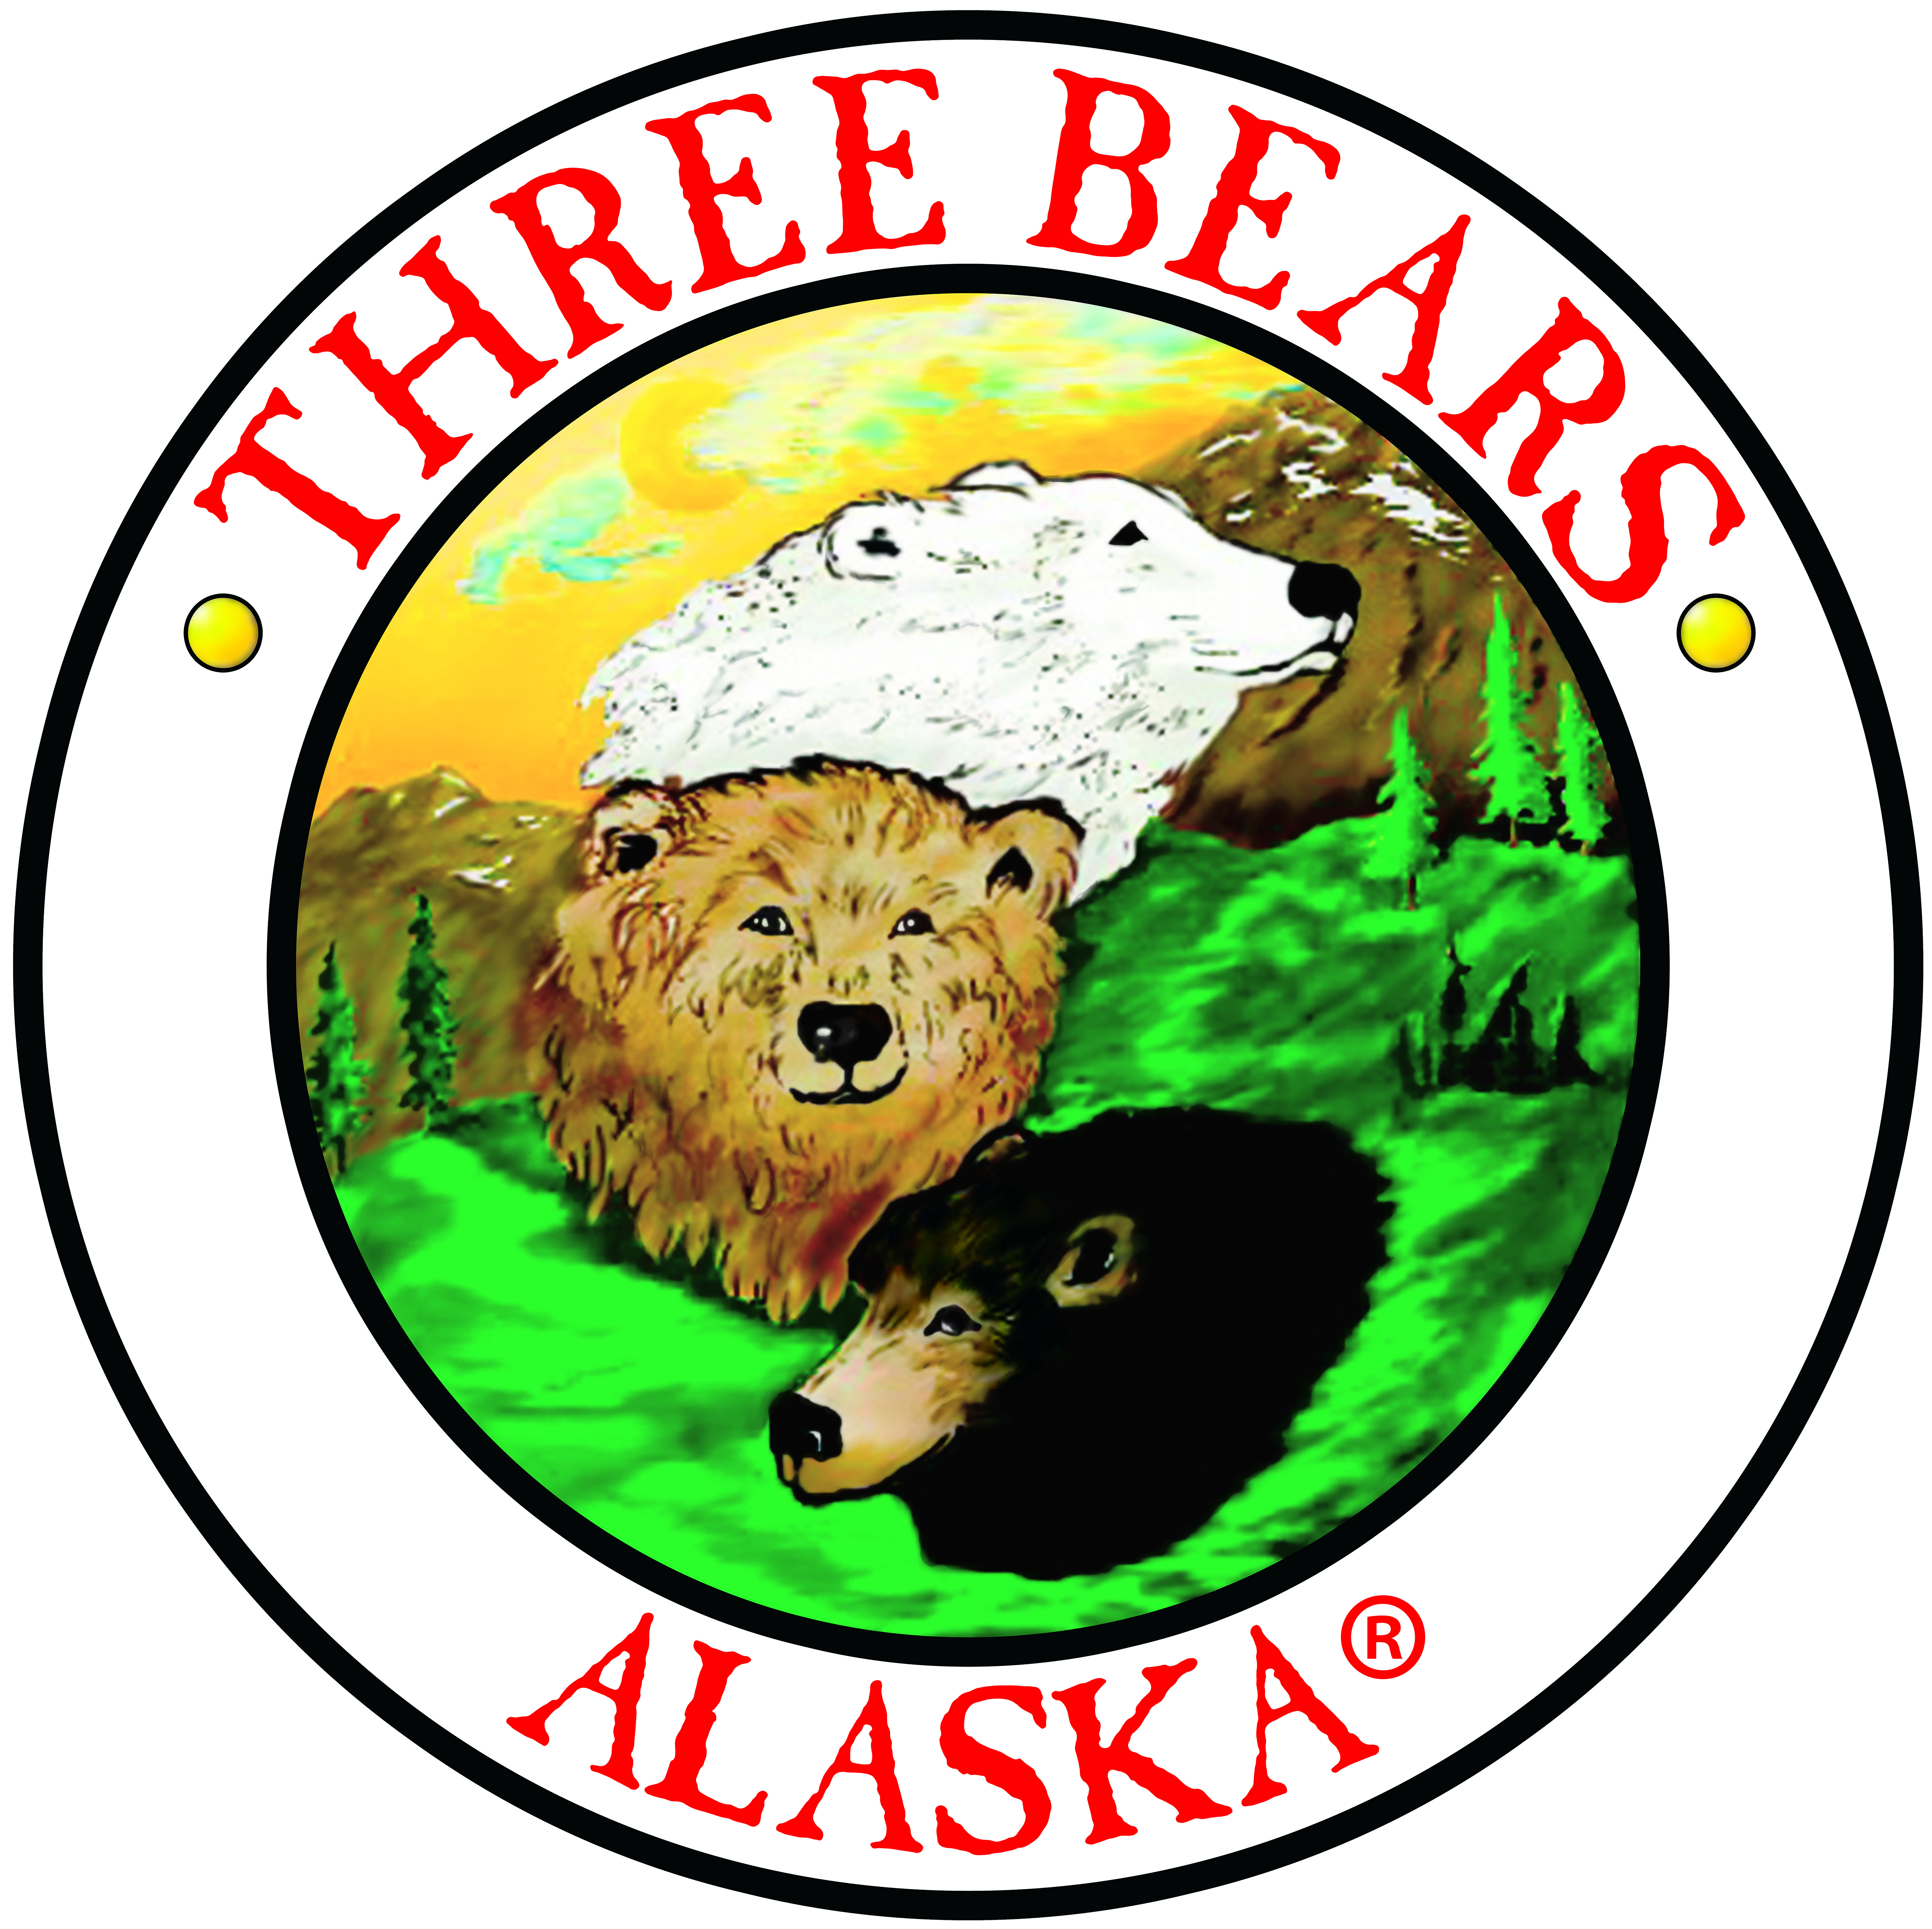 Three Bears Alaska, Inc.